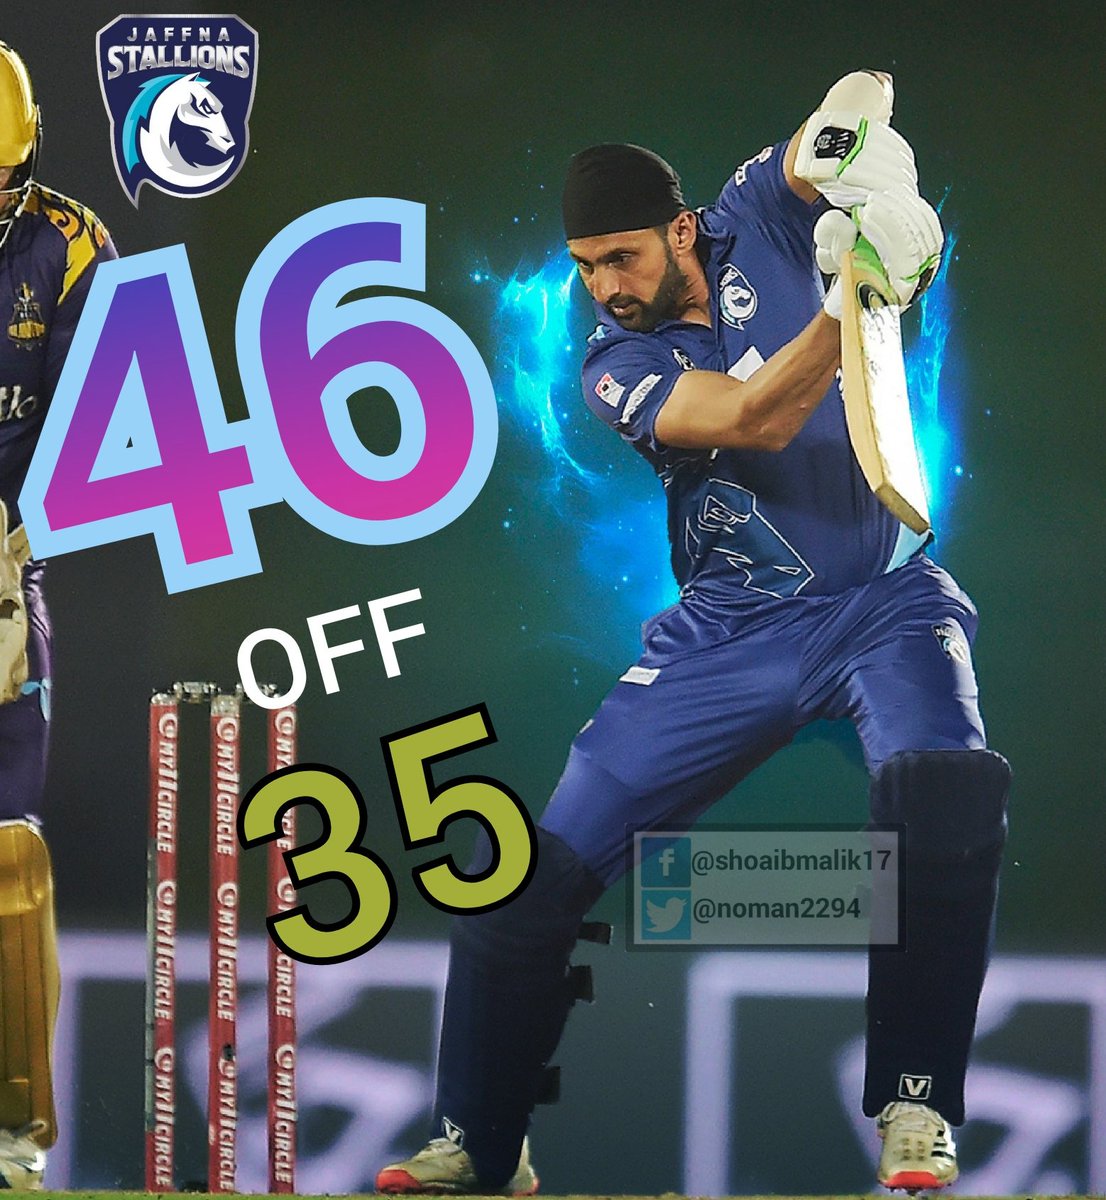 Well played Shoaib Malik 🏆
#LPL2020 #Cricket #JaffnaStallions